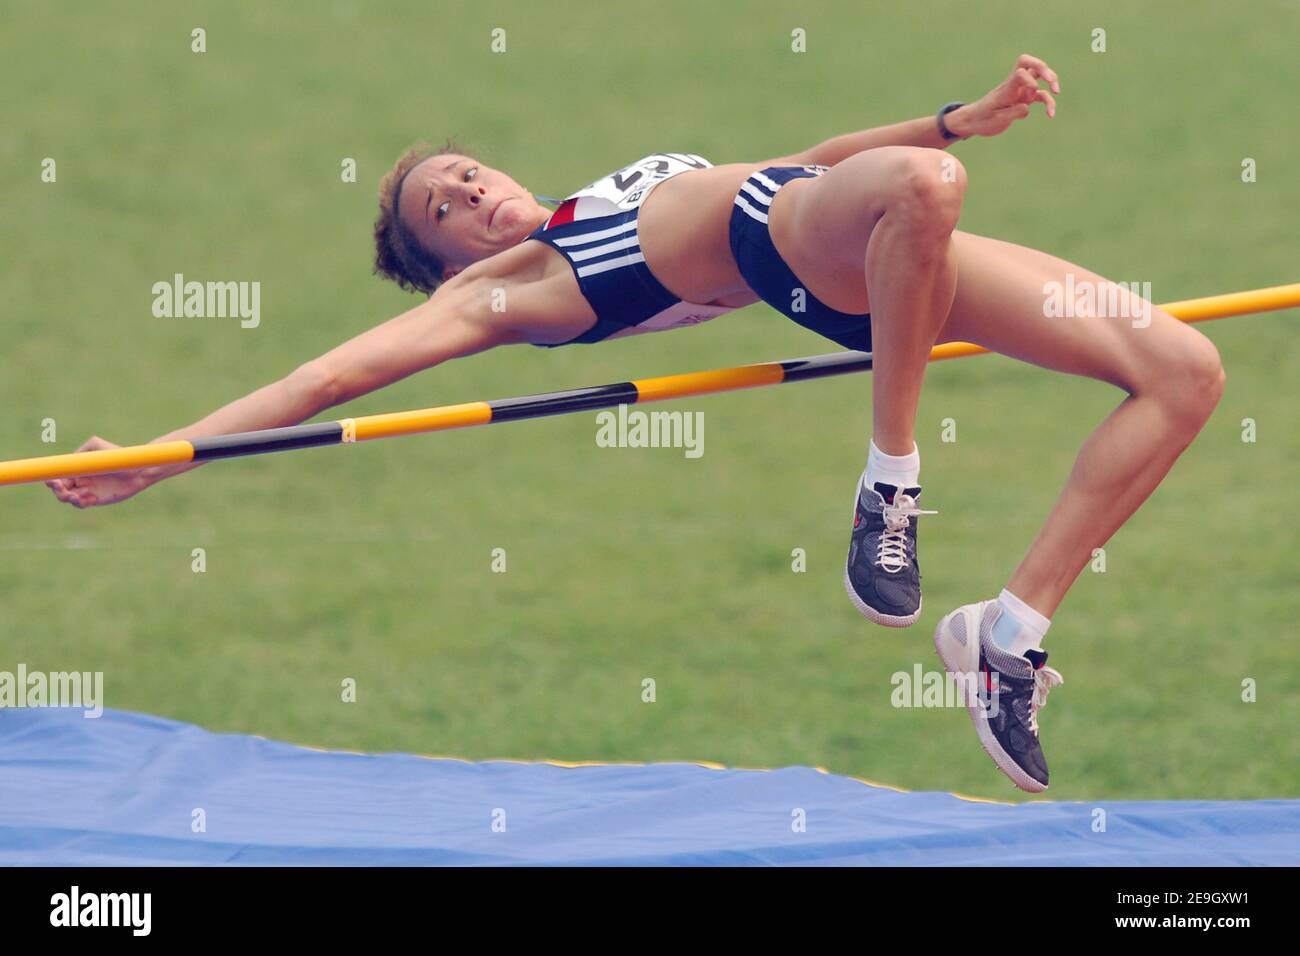 Il Gran Bretagna Jade Surman compete sul salto di alta qualità femminile dell'eptahlon durante l'undicesimo campionato mondiale junior IAAF a Pechino, Cina, il 18 agosto 2006. Foto di Nicolas Gouhier/Cameleon/ABACAPRESS.COM Foto Stock